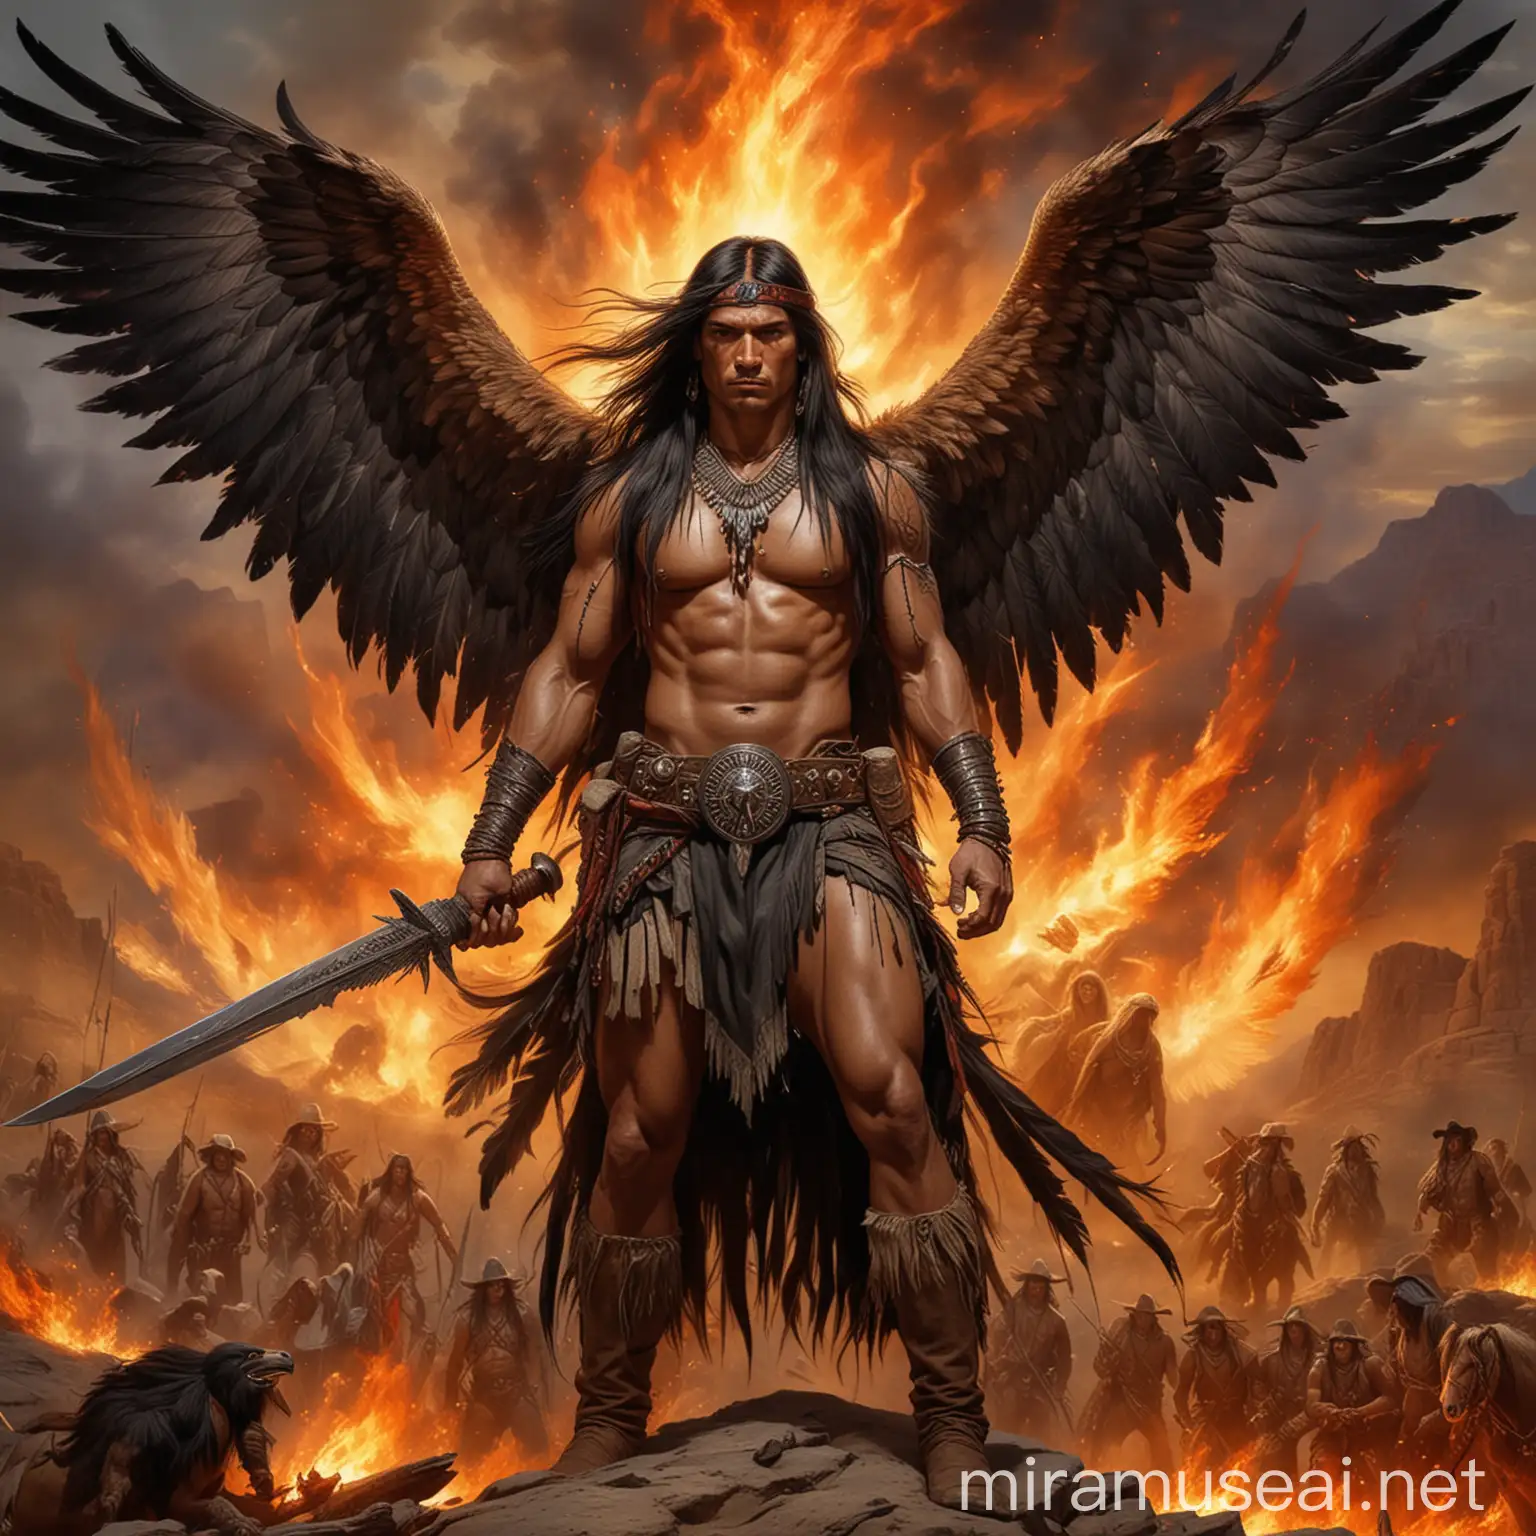 Apache Warrior with Majestic Wings in Fiery Battle